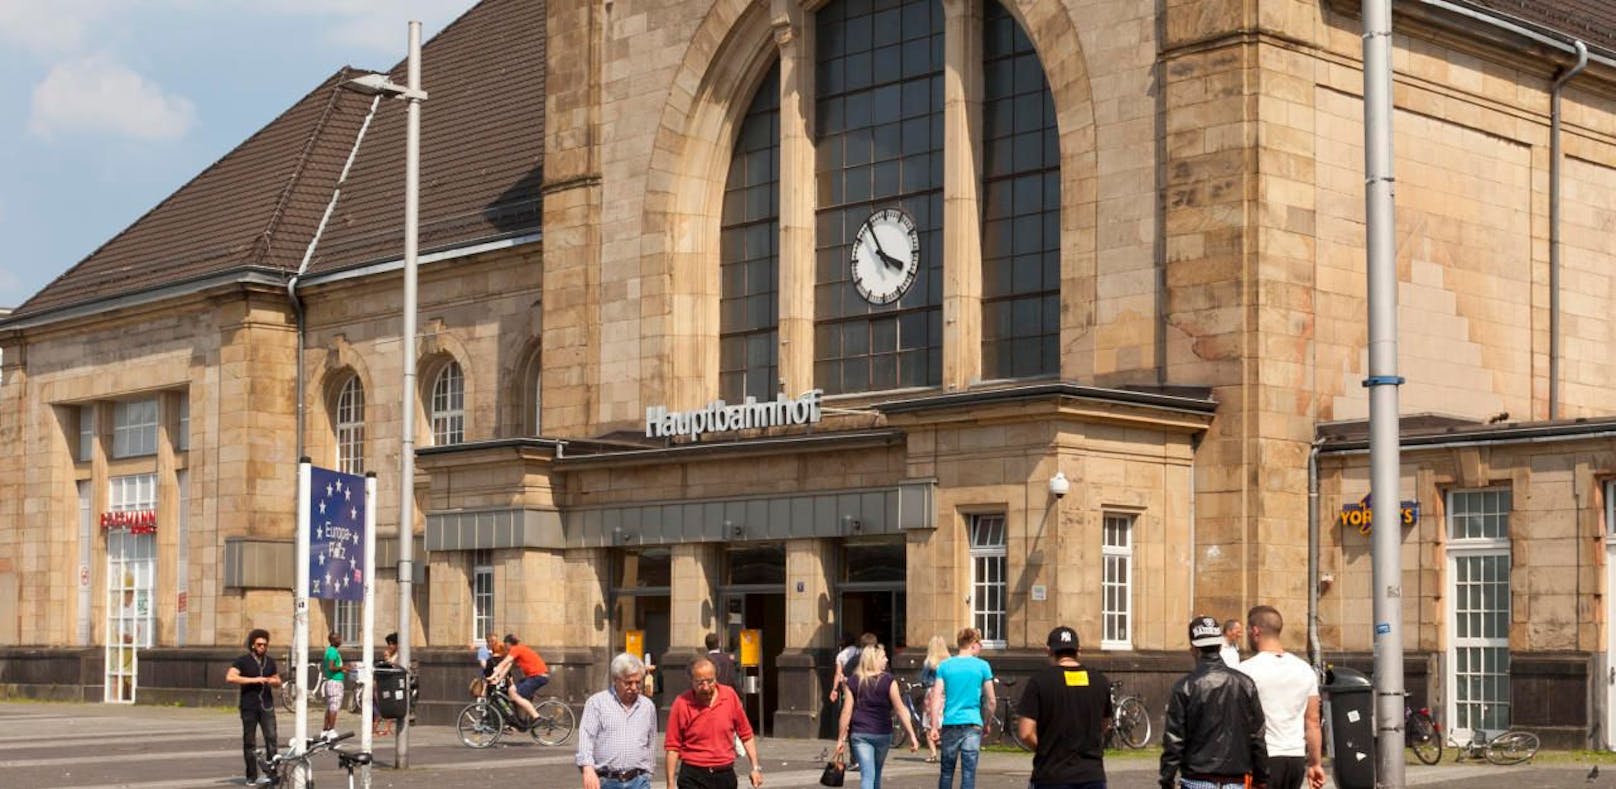 Auf dem Rückweg zum Hauptbahnhof Mönchengladbach wurde eine 19-jährige Frau in einem Fan-Zug Opfer einer Vergewaltigung. 